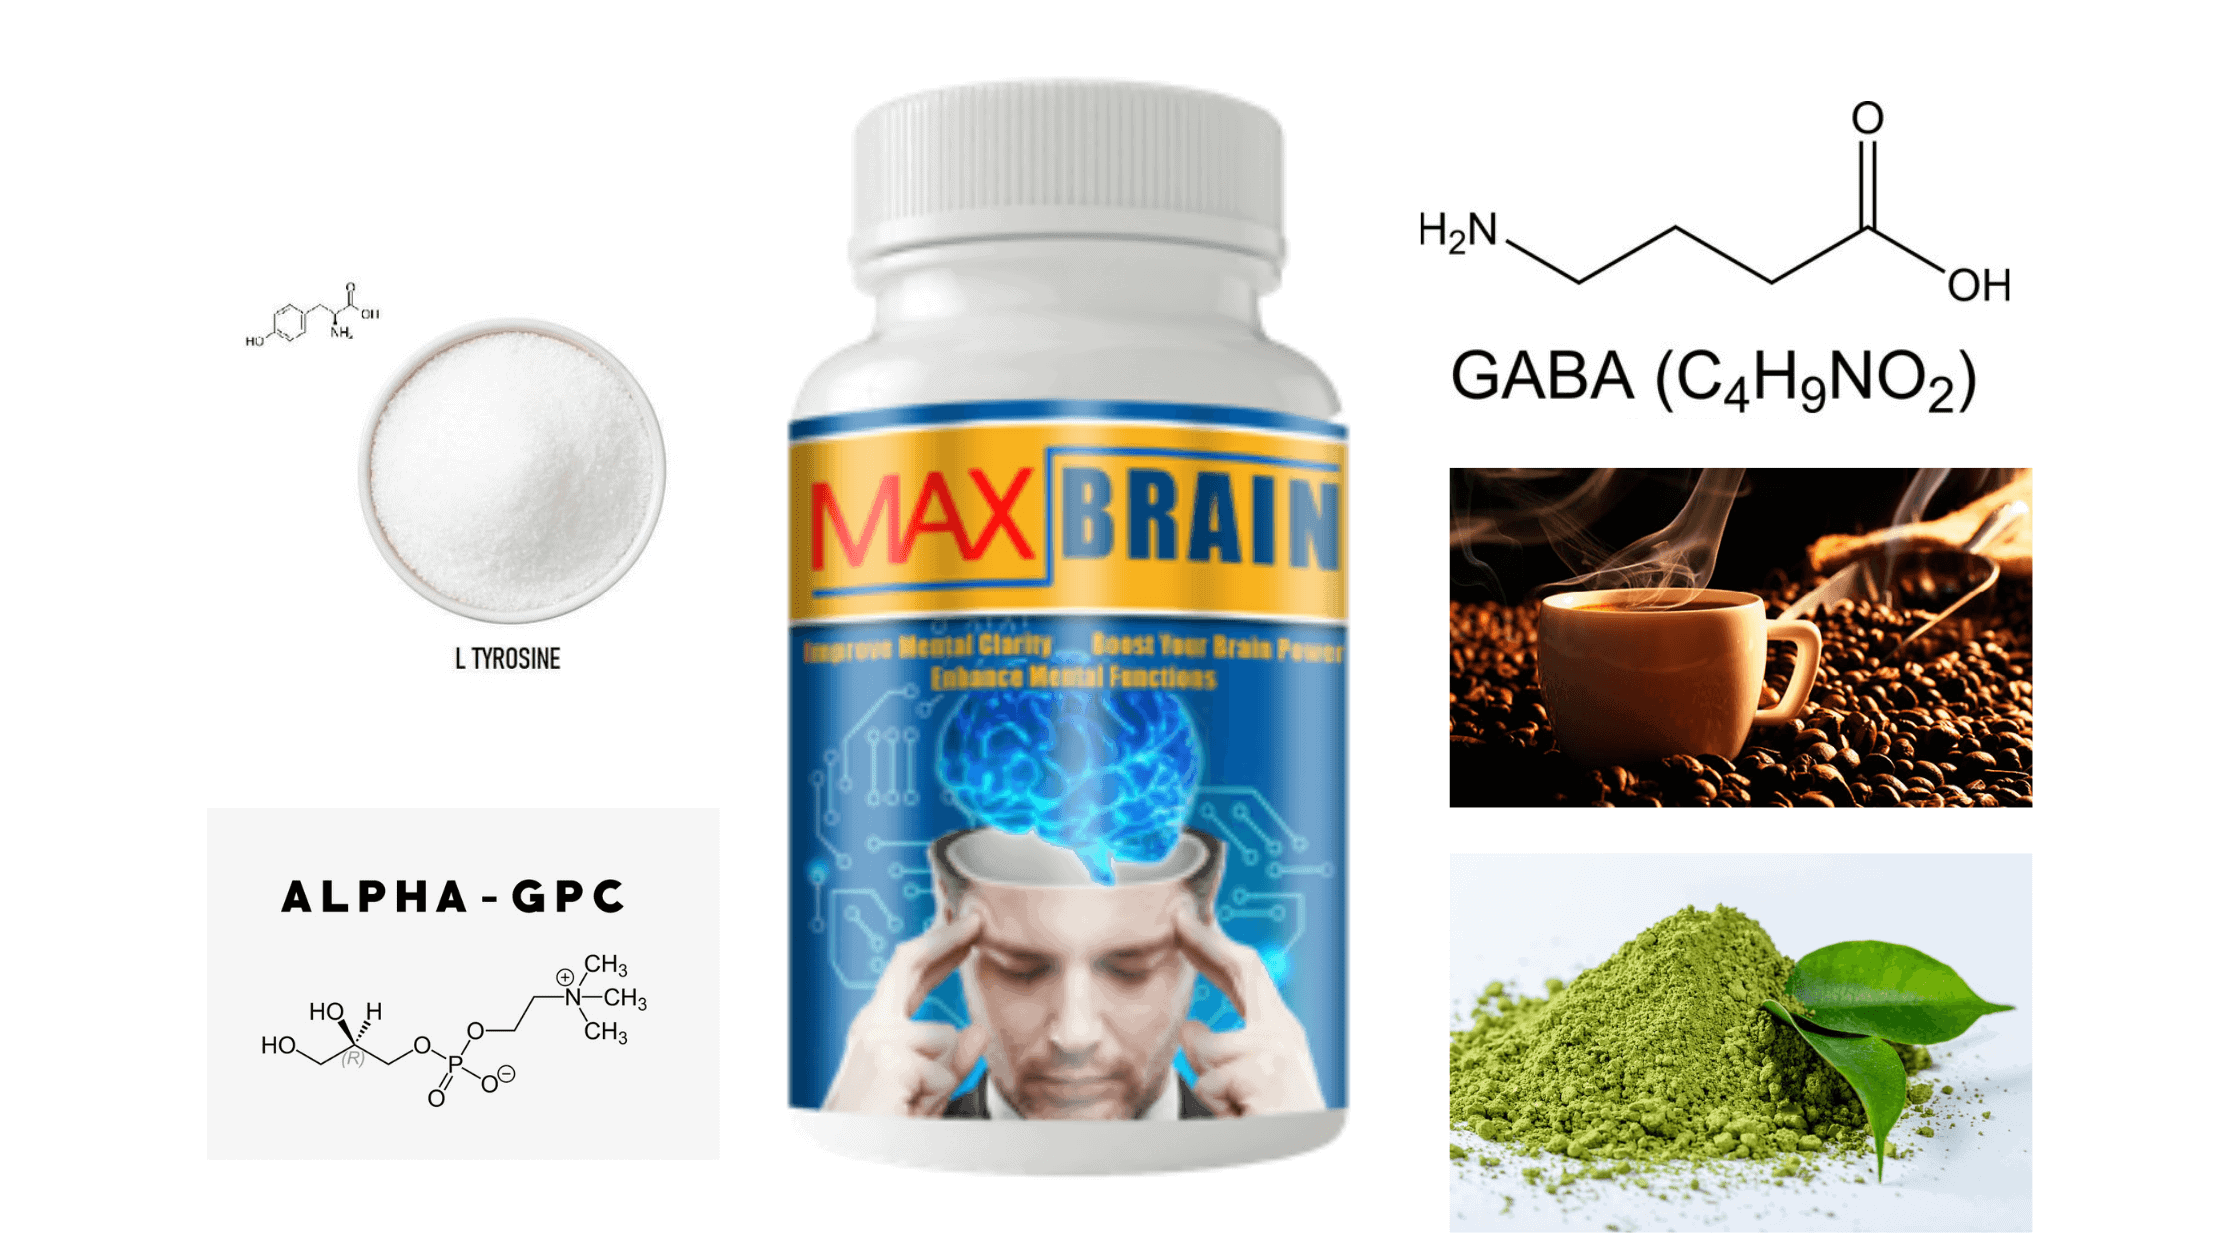 Max Brain ingredients